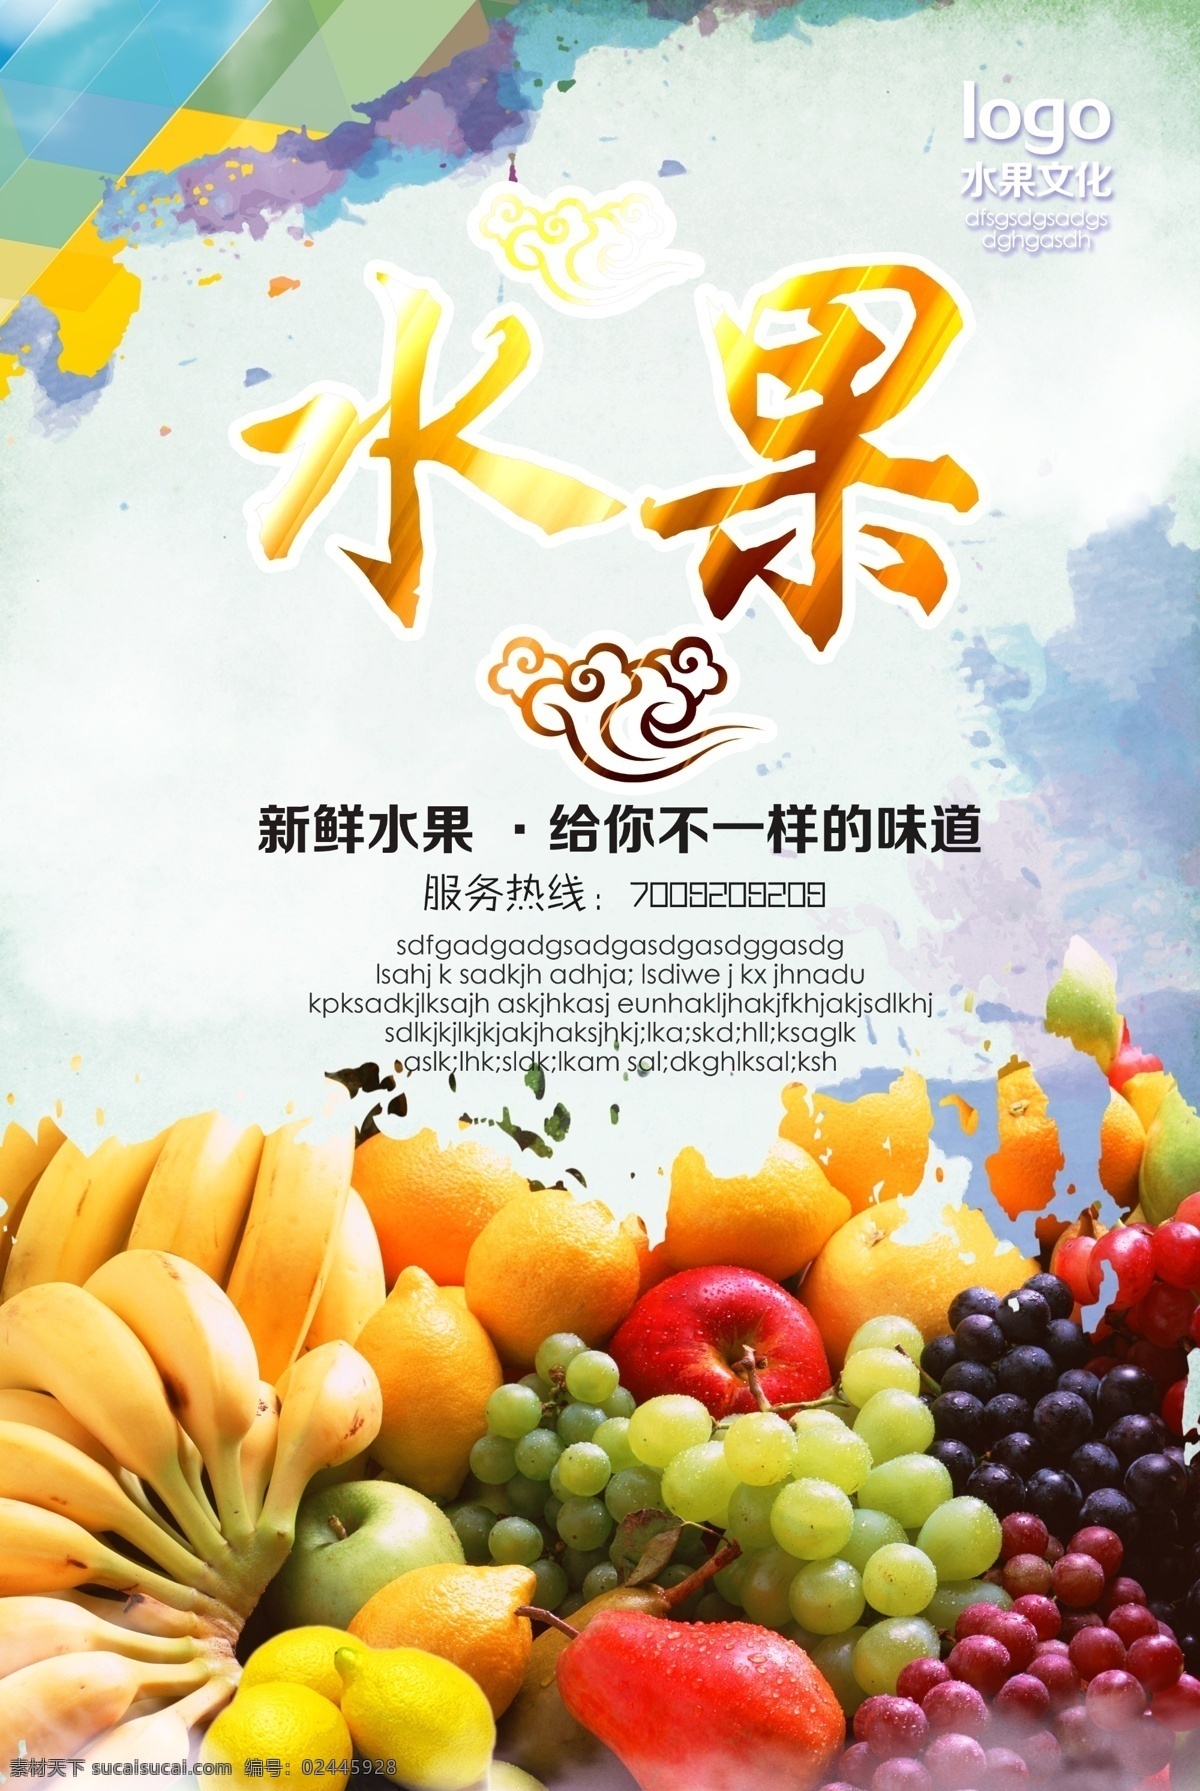 新鲜水果写真 水果广告 水果写真 水果超市 新鲜水果 室内广告